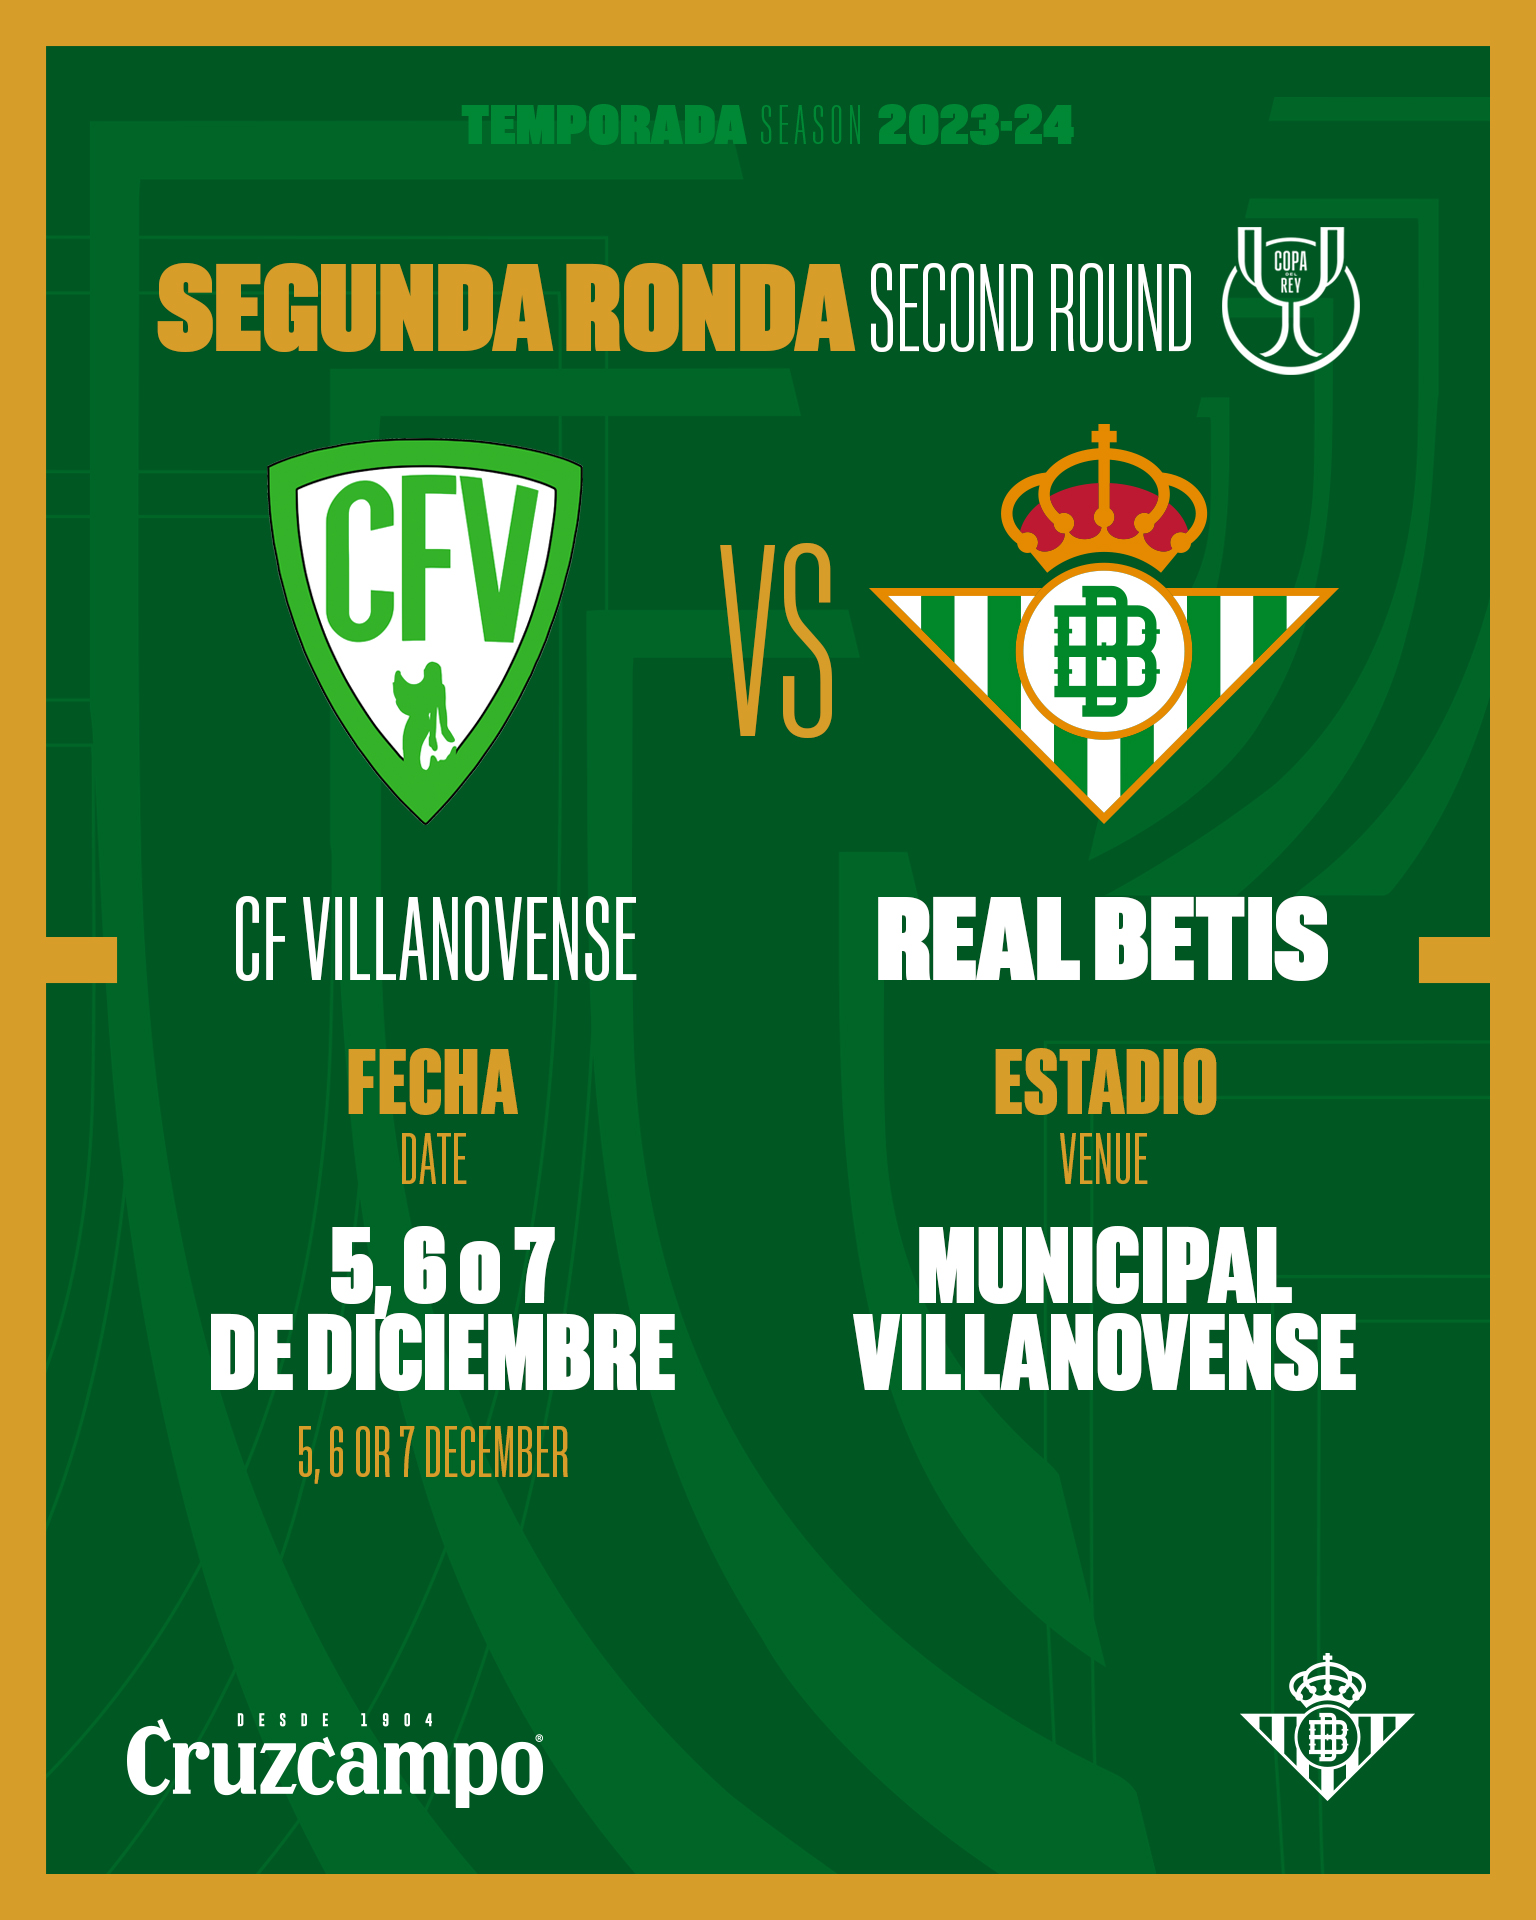 OFICIAL – El Real Betis se enfrentará al Villanovense en la segunda ronda de la Copa del Rey